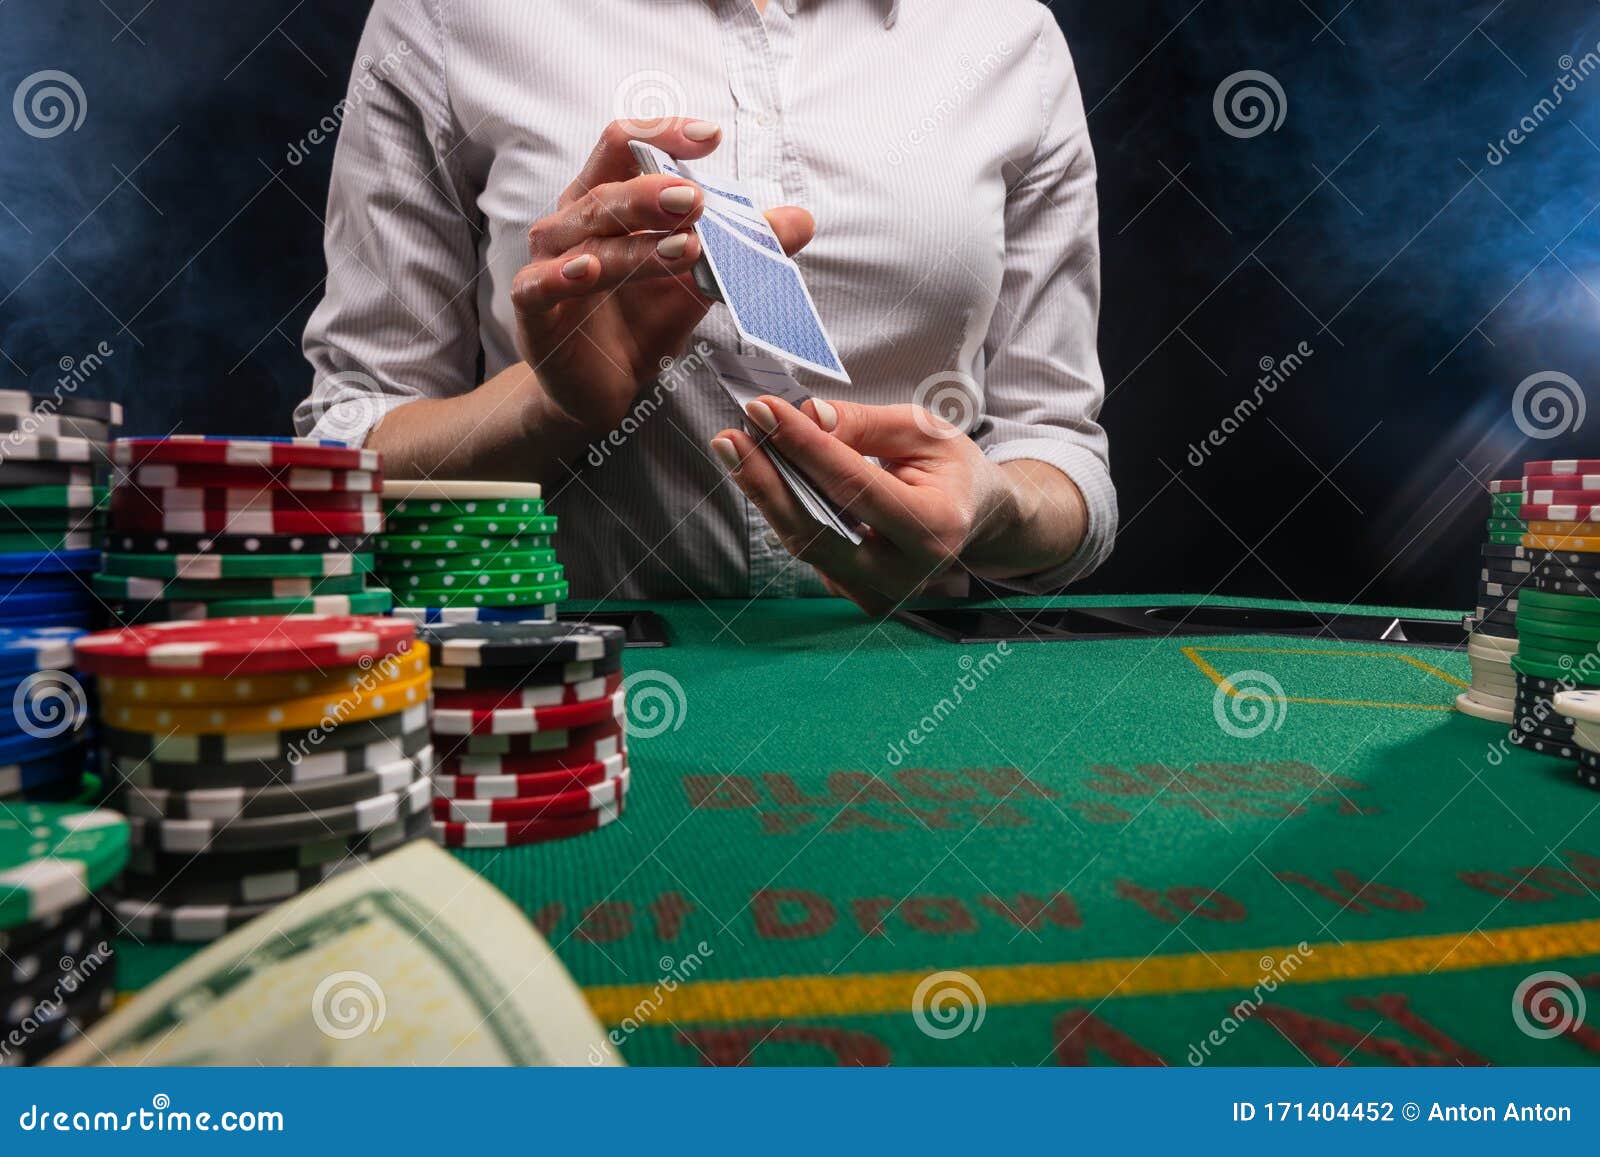 Казино бизнес игры в крыму откроют казино